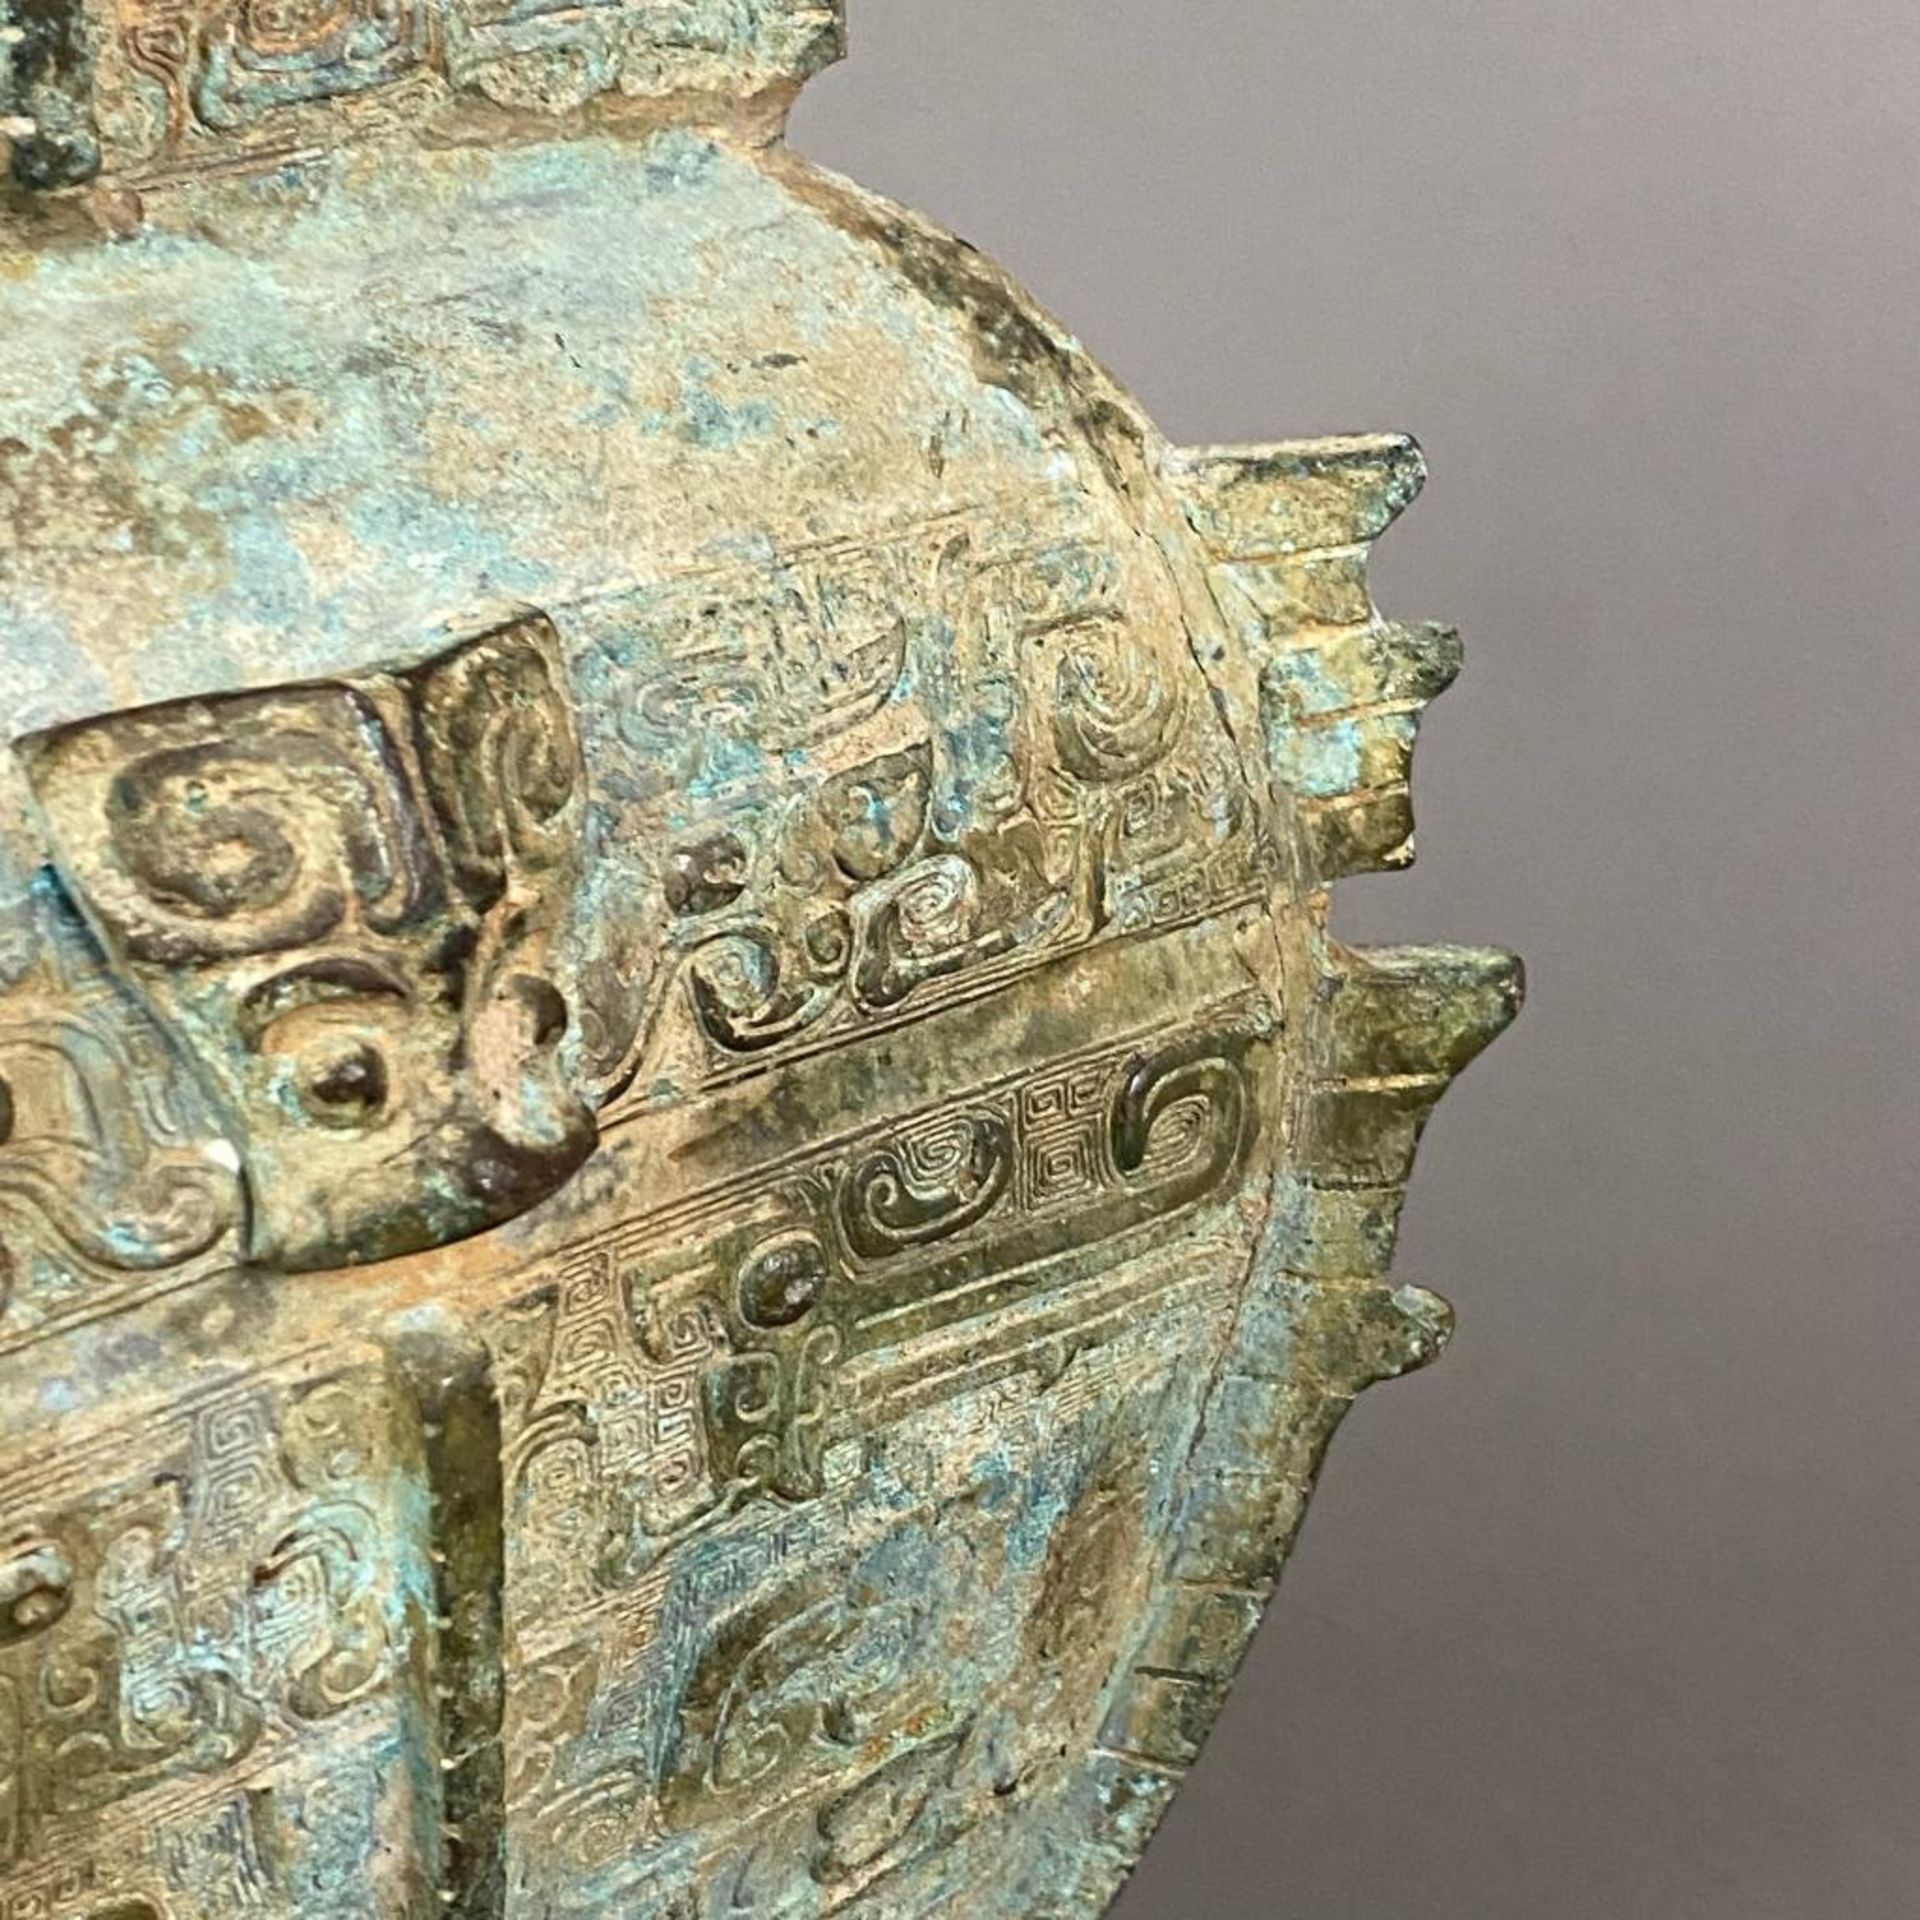 Fanghu-Vase im archaischen Stil - China, grün-braun patinierte Bronze, vierkantige gebauchte Form a - Image 6 of 10